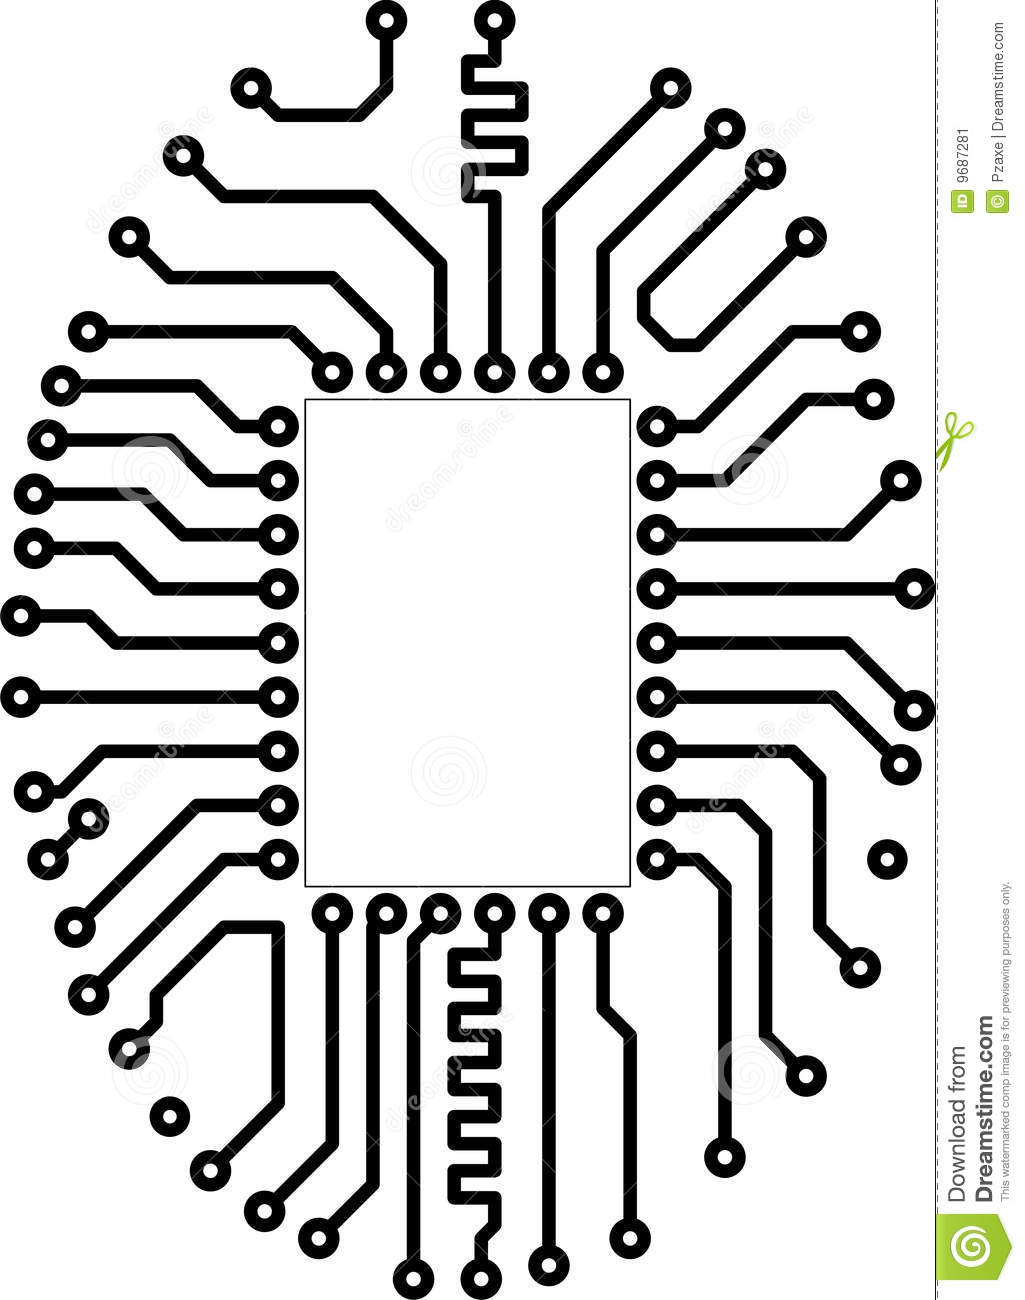 Circuit board vector .